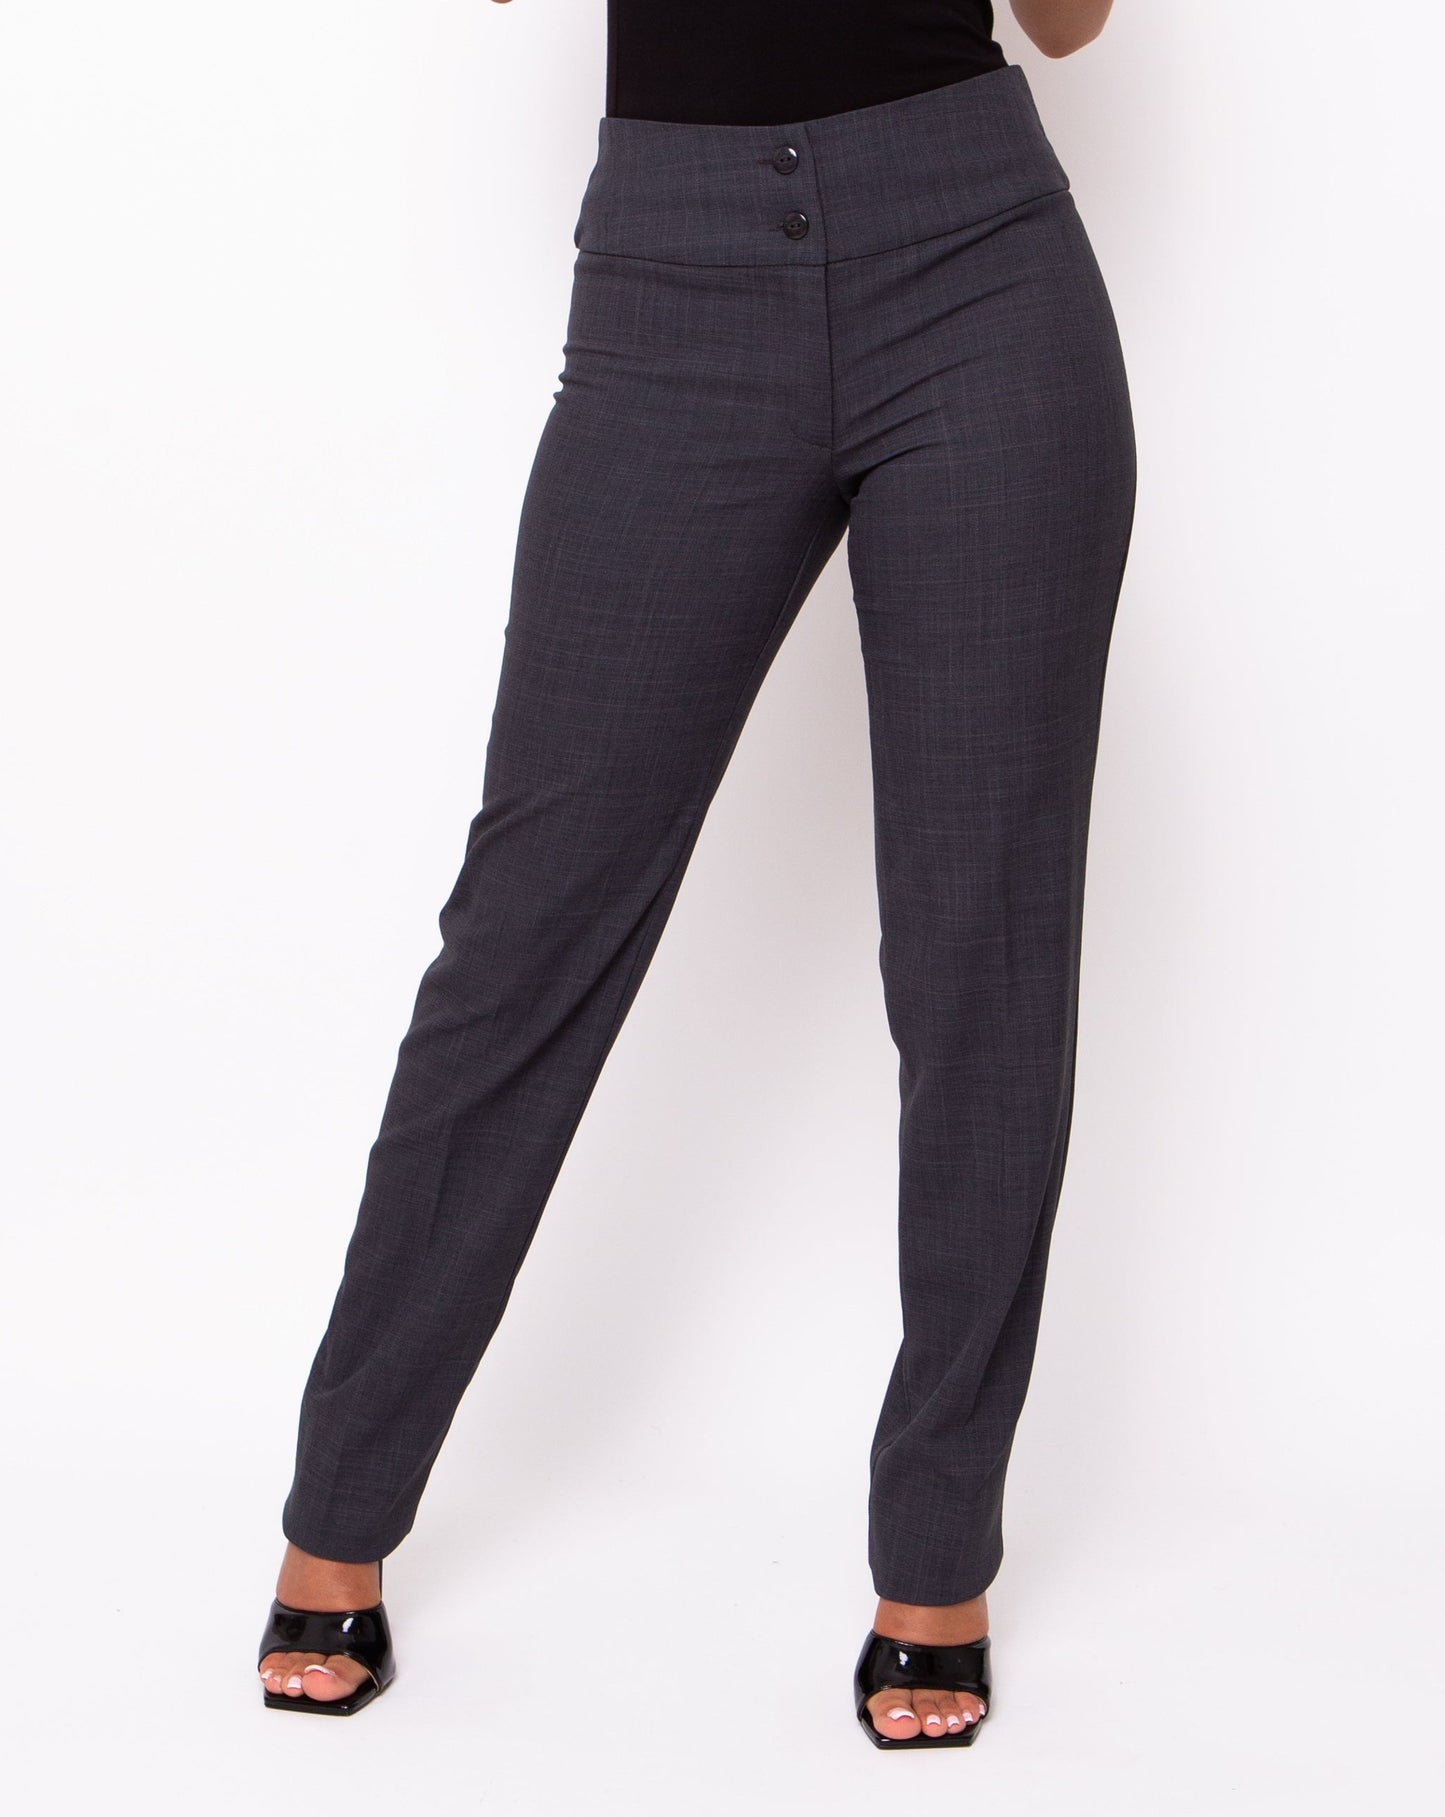 grey trousers women